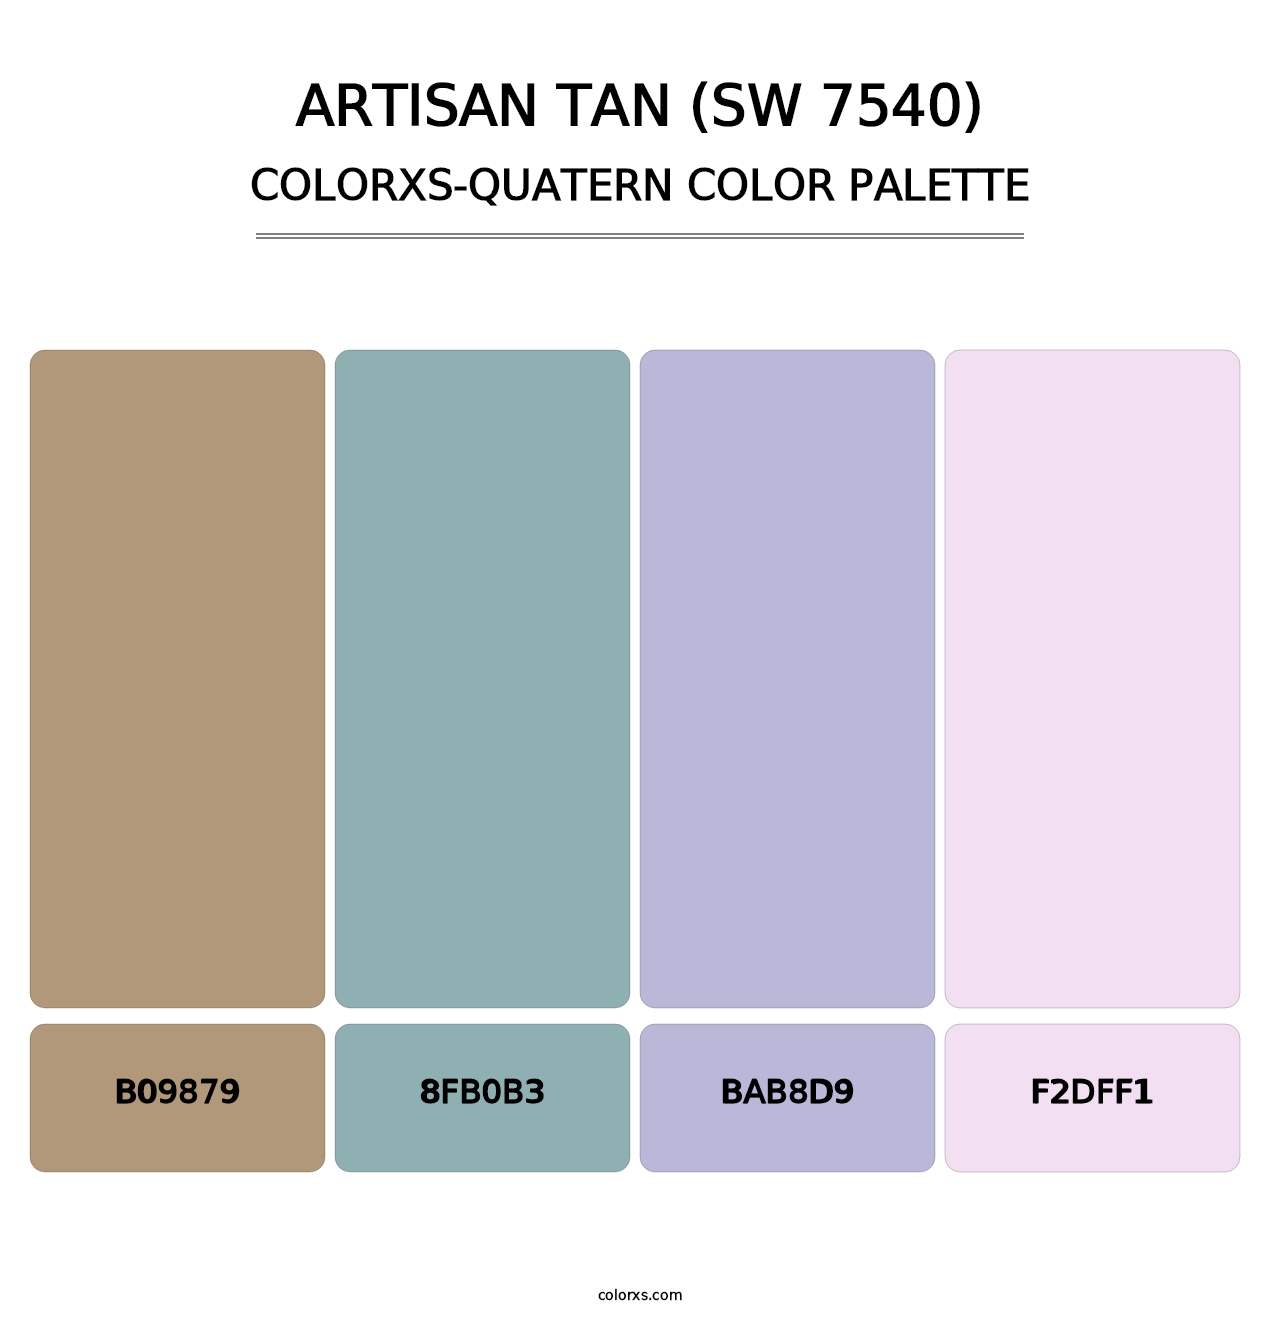 Artisan Tan (SW 7540) - Colorxs Quatern Palette